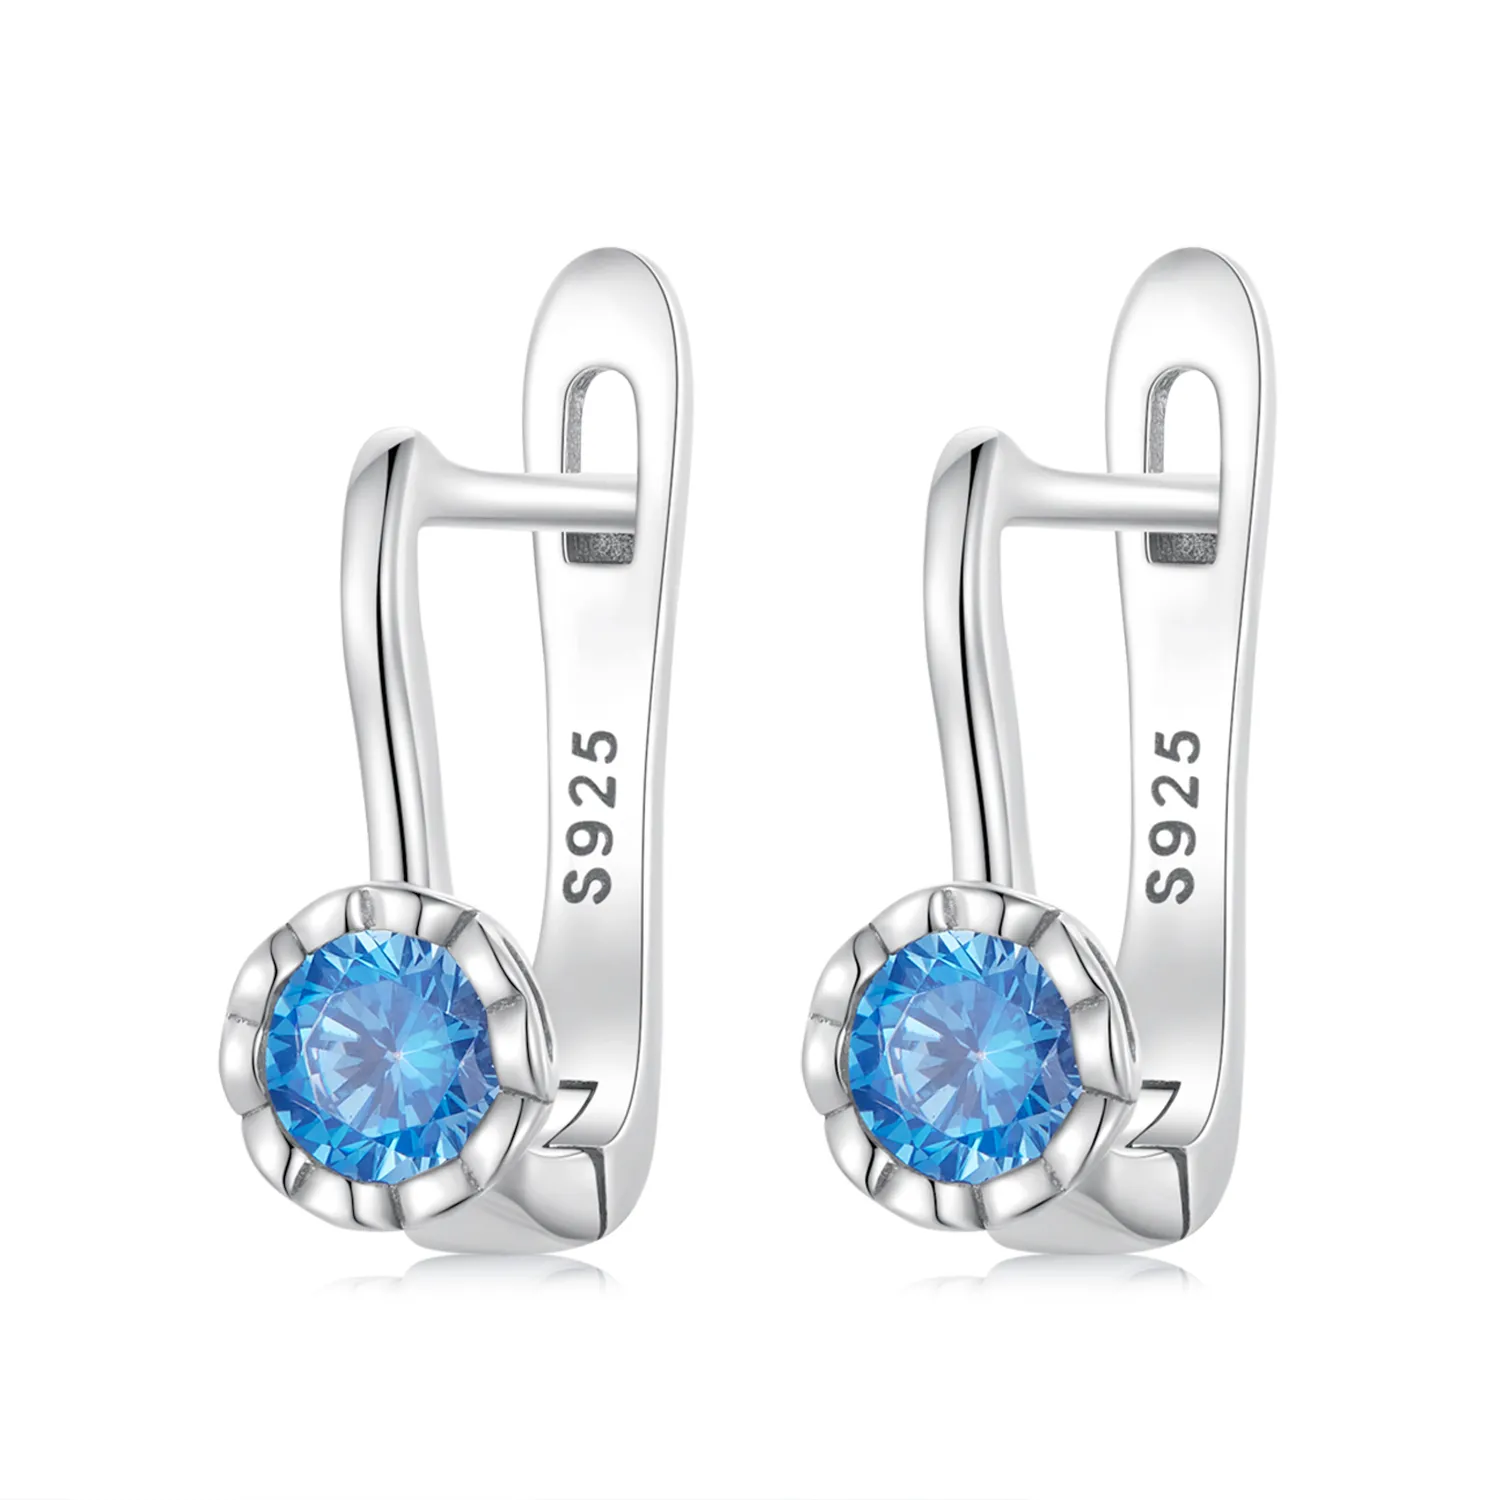 Pandora Style Simple Blue Zirconium Hoop Earrings - BSE686